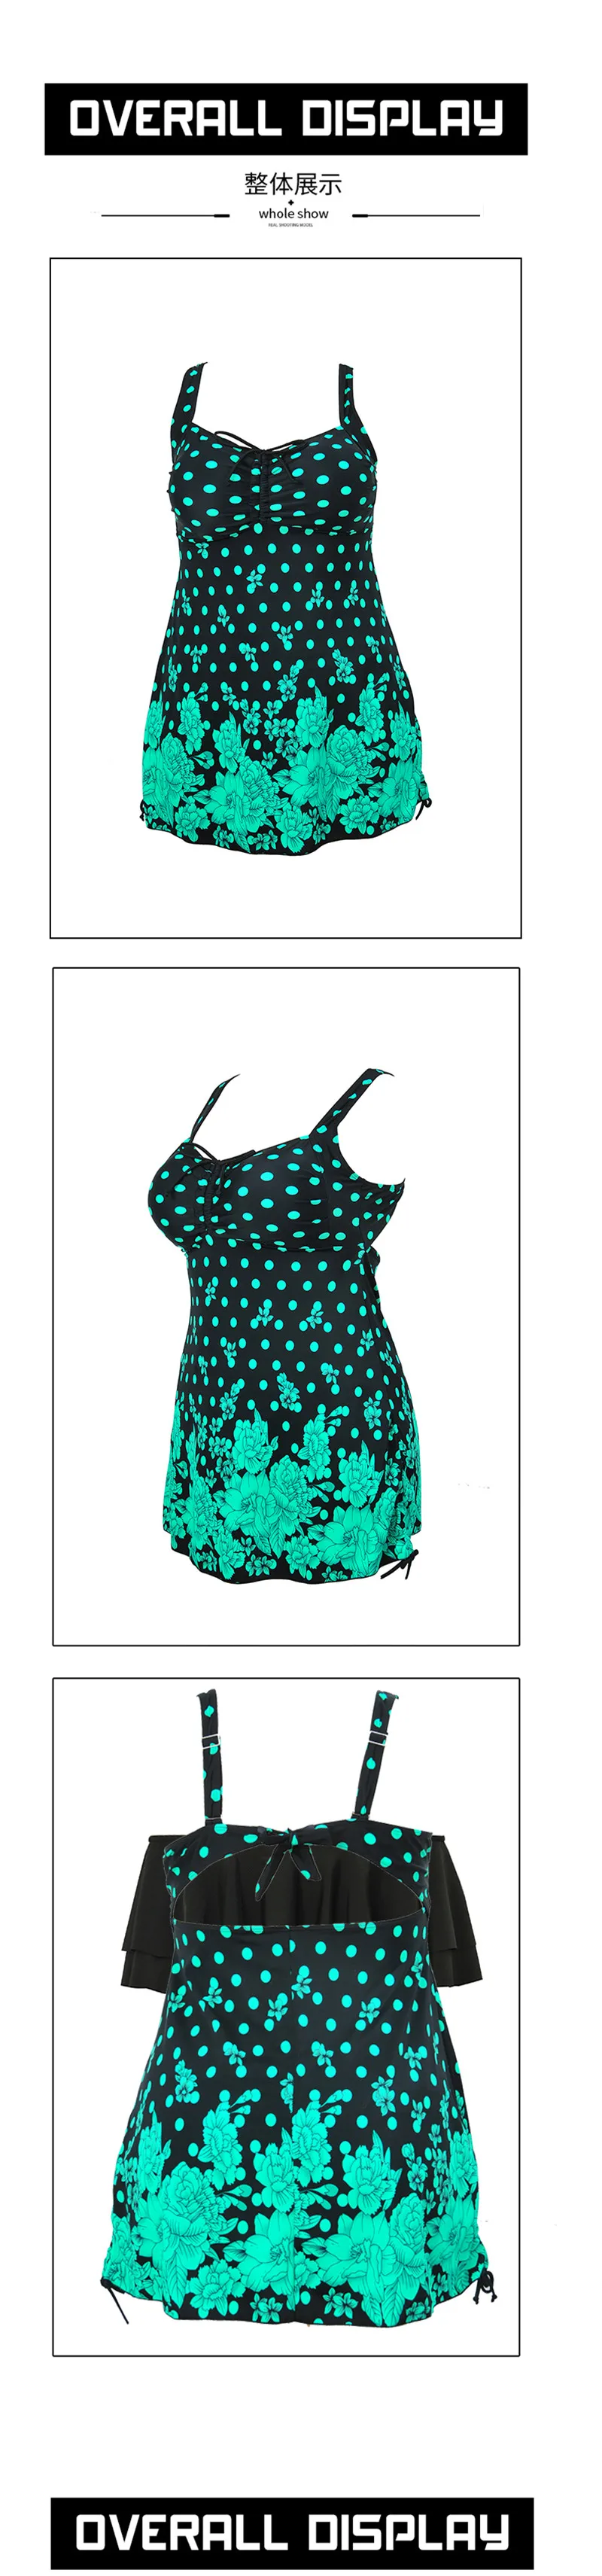 Женский Танкини с принтом размера плюс, сексуальный купальник, большая талия, купальники, спортивные костюмы, пляжная одежда, купальный костюм, Пляжное Платье, 9XL-13XL